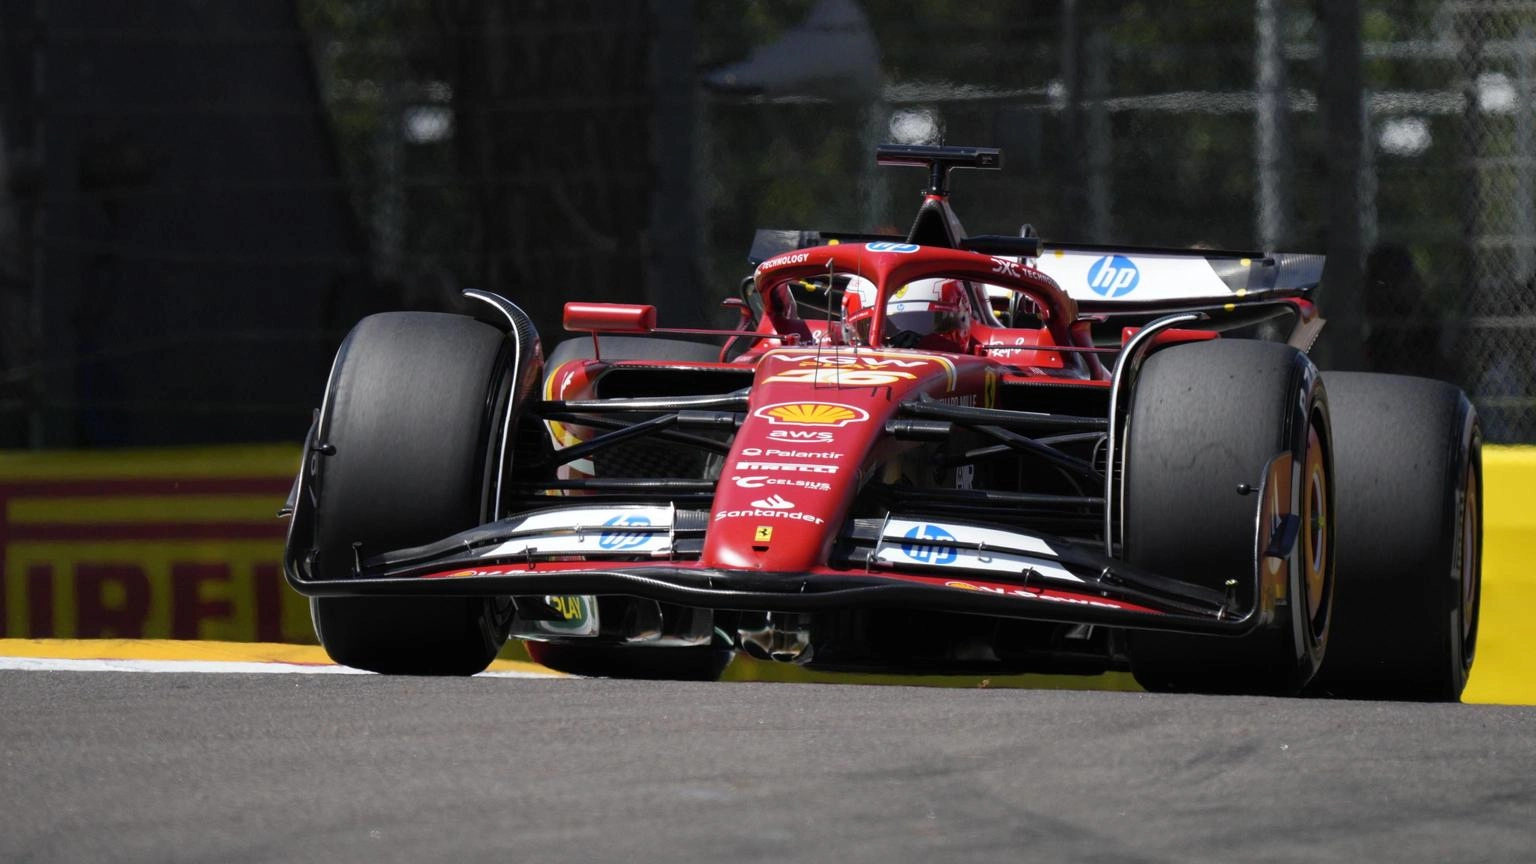 F1: Imola; Ferrari Leclerc vola in libere 1, solo 5/o Verstappen